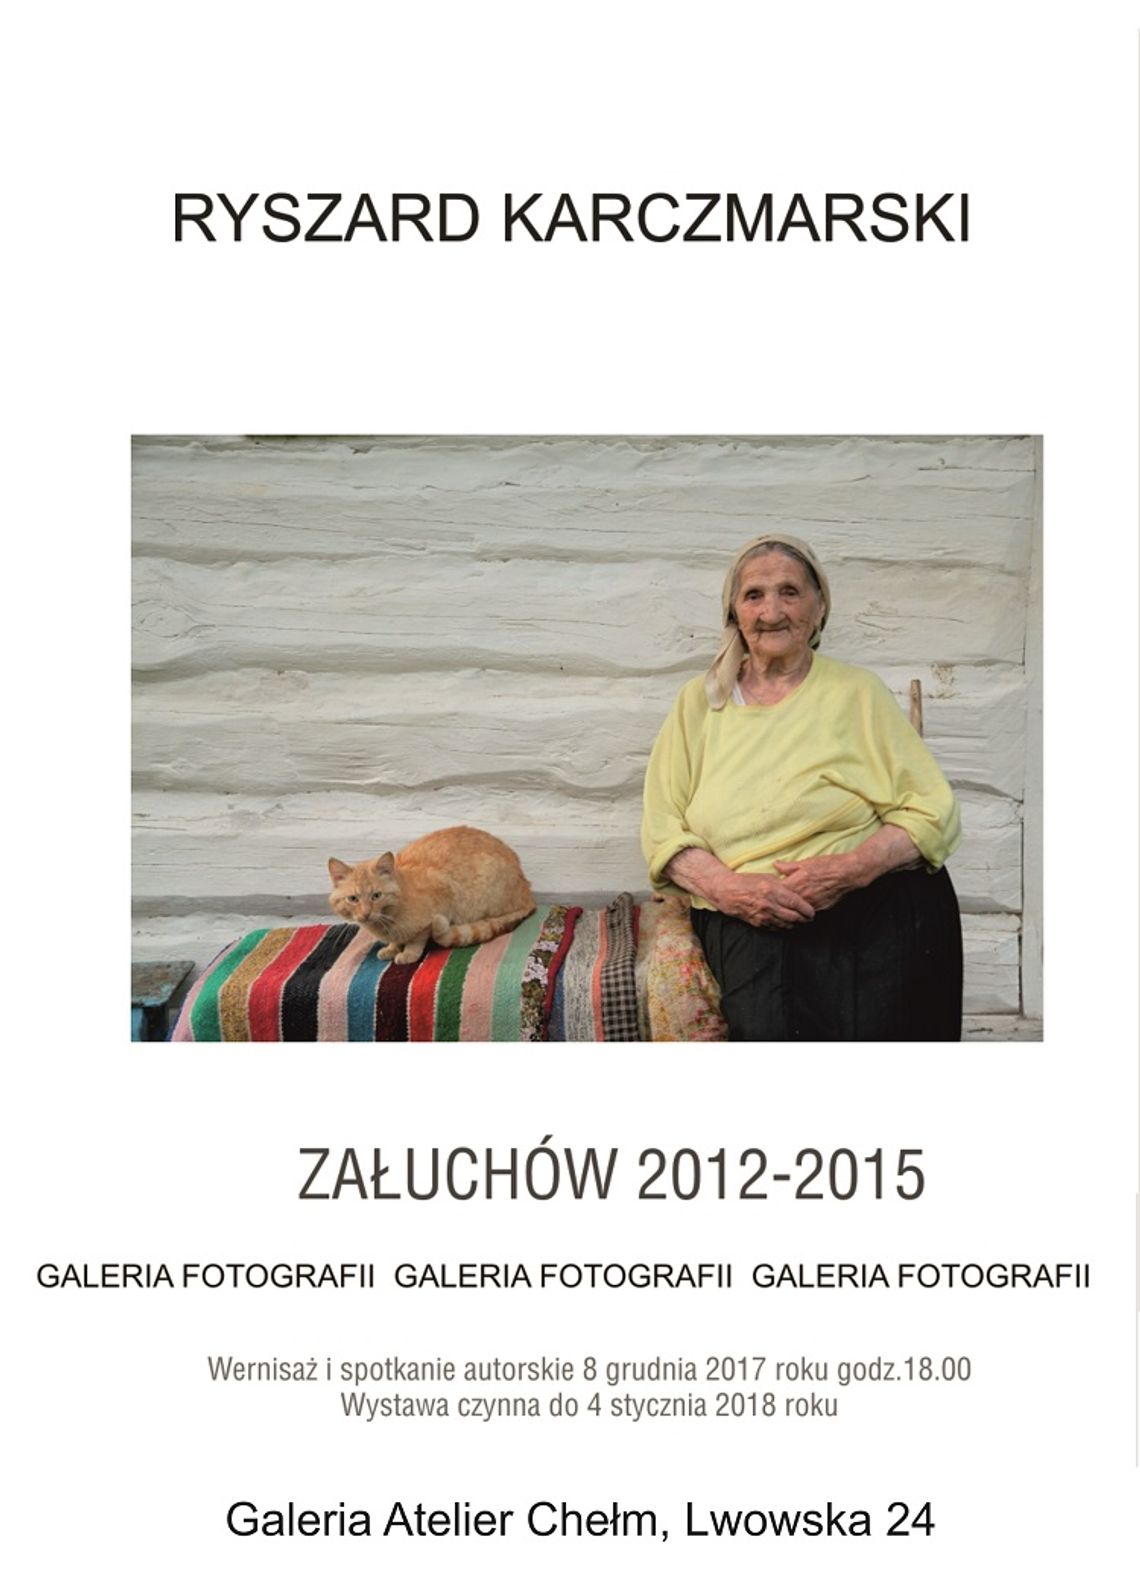 Wernisaż wystawy fotografii "Załuchów 2012-2015" w Galerii Atelier